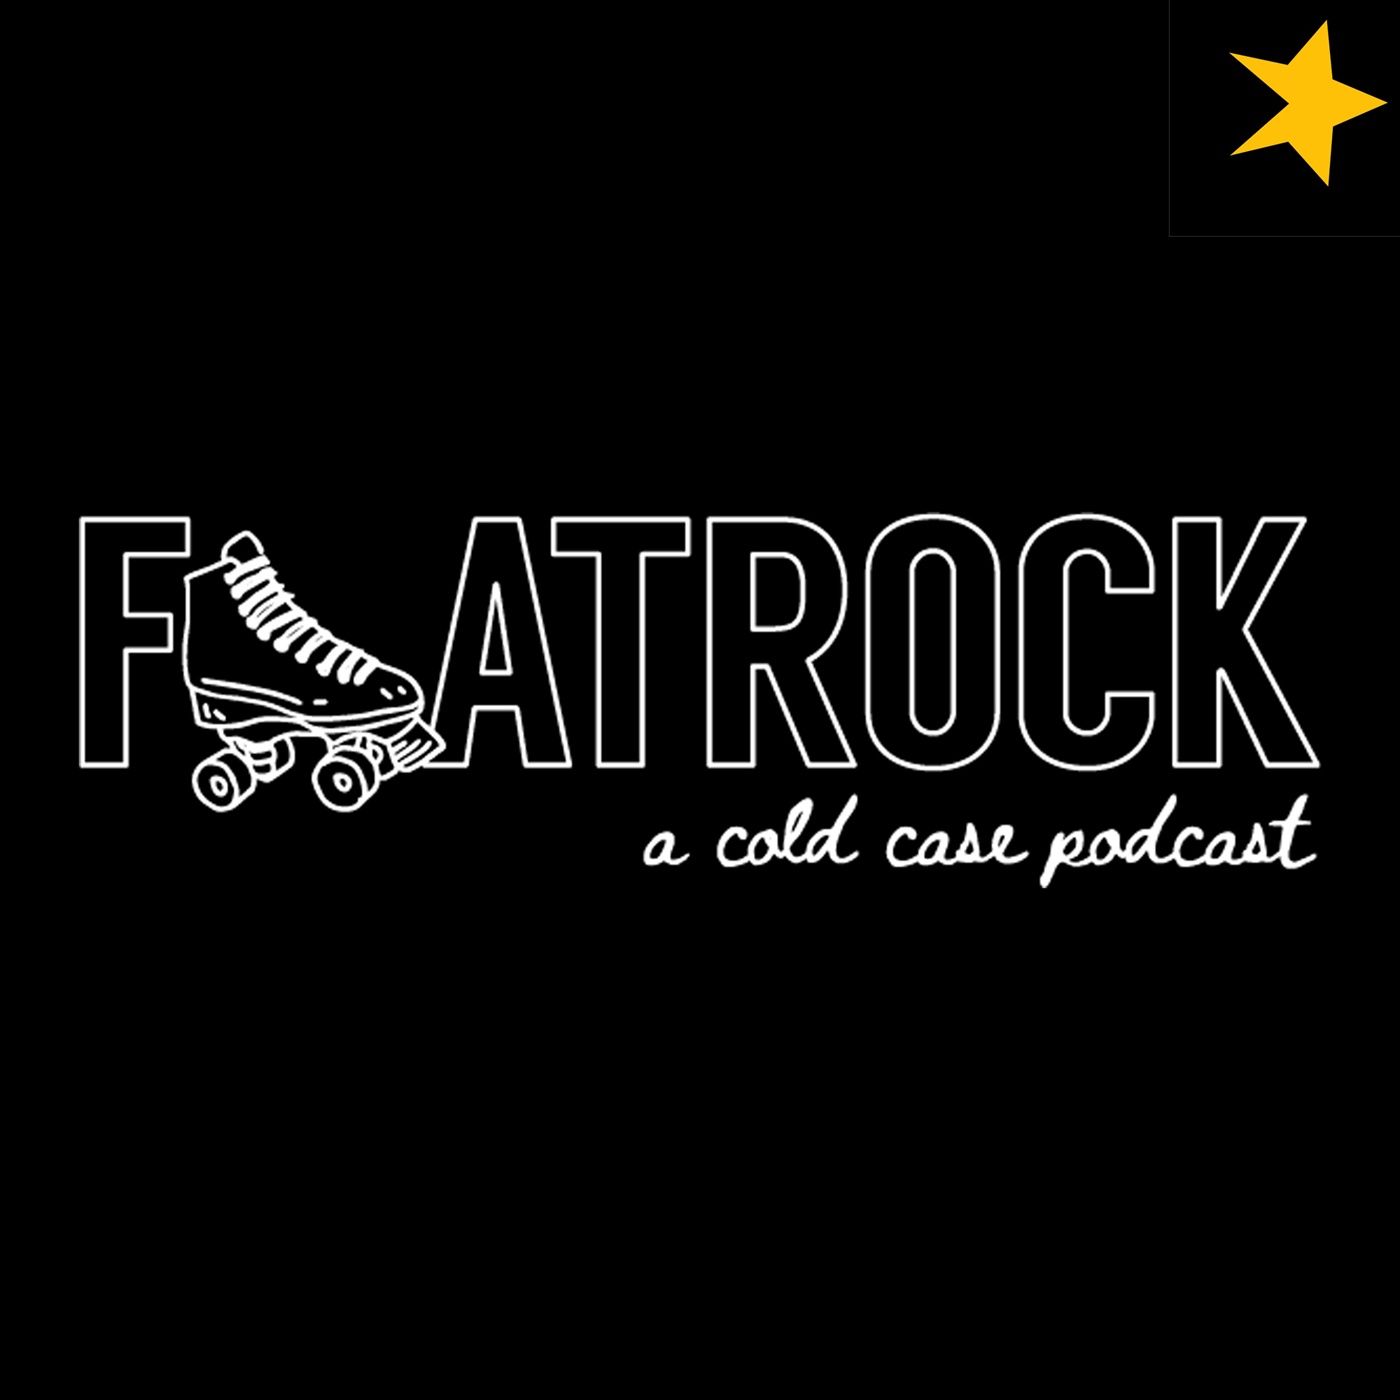 Flatrock preview